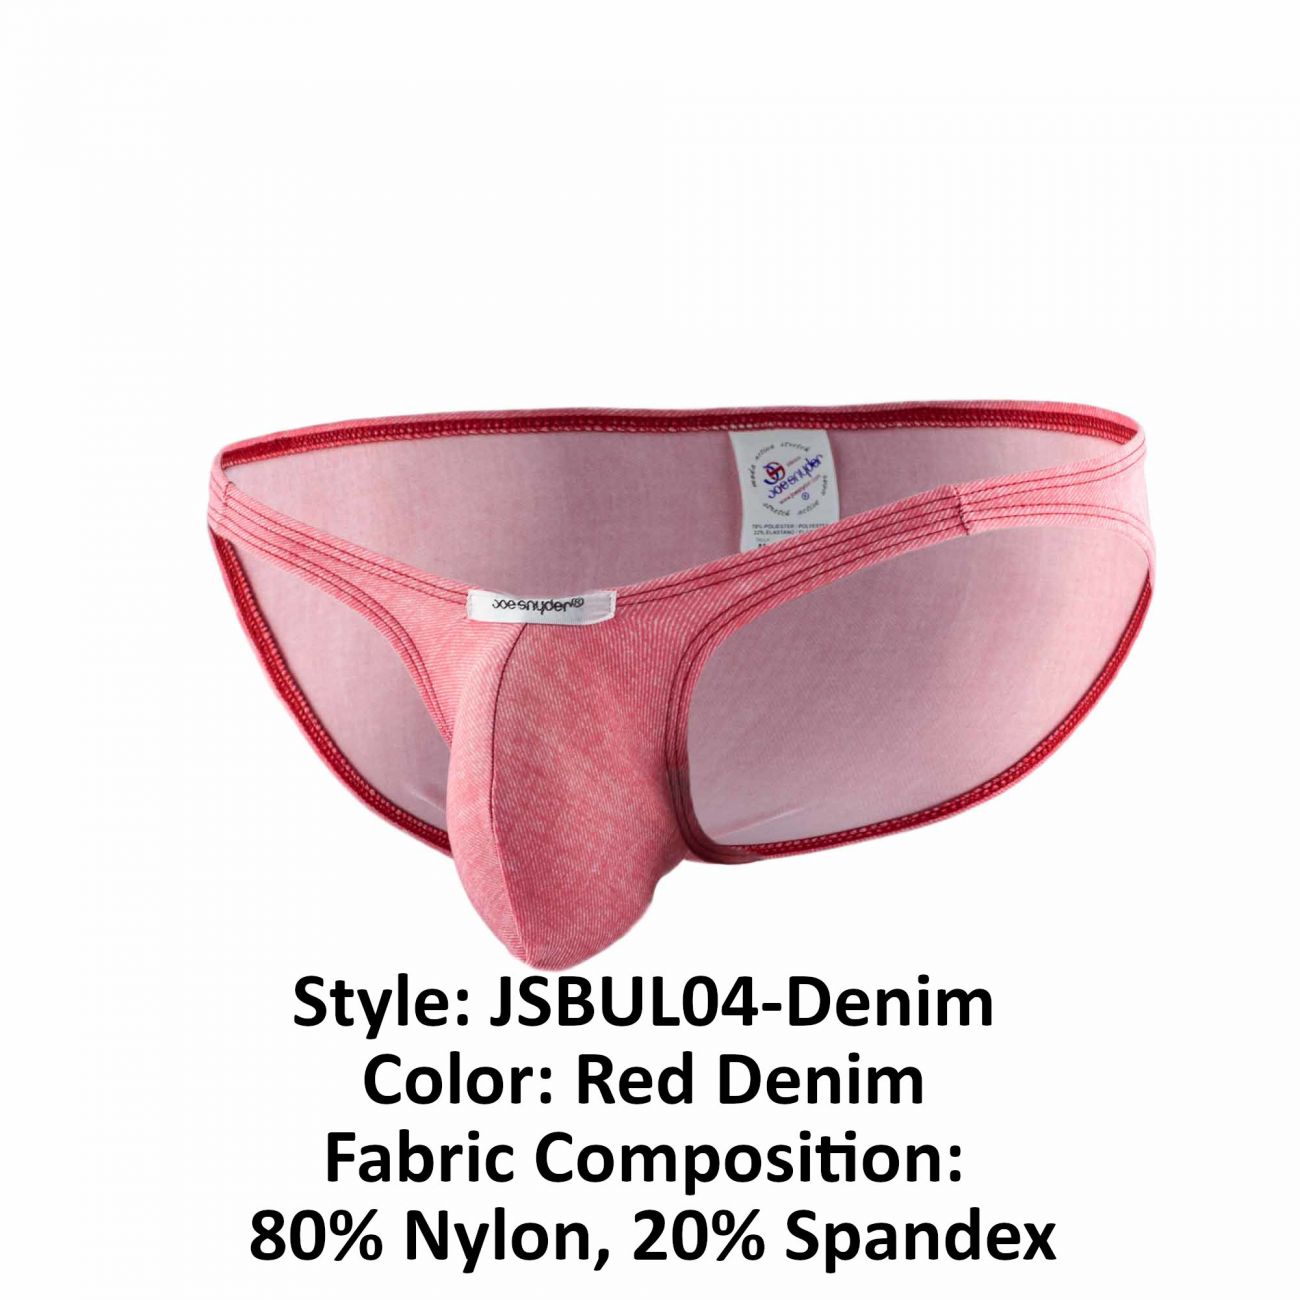 Joe Snyder JSBUL04-Denim Denim Bulge Full Bikini Red Denim